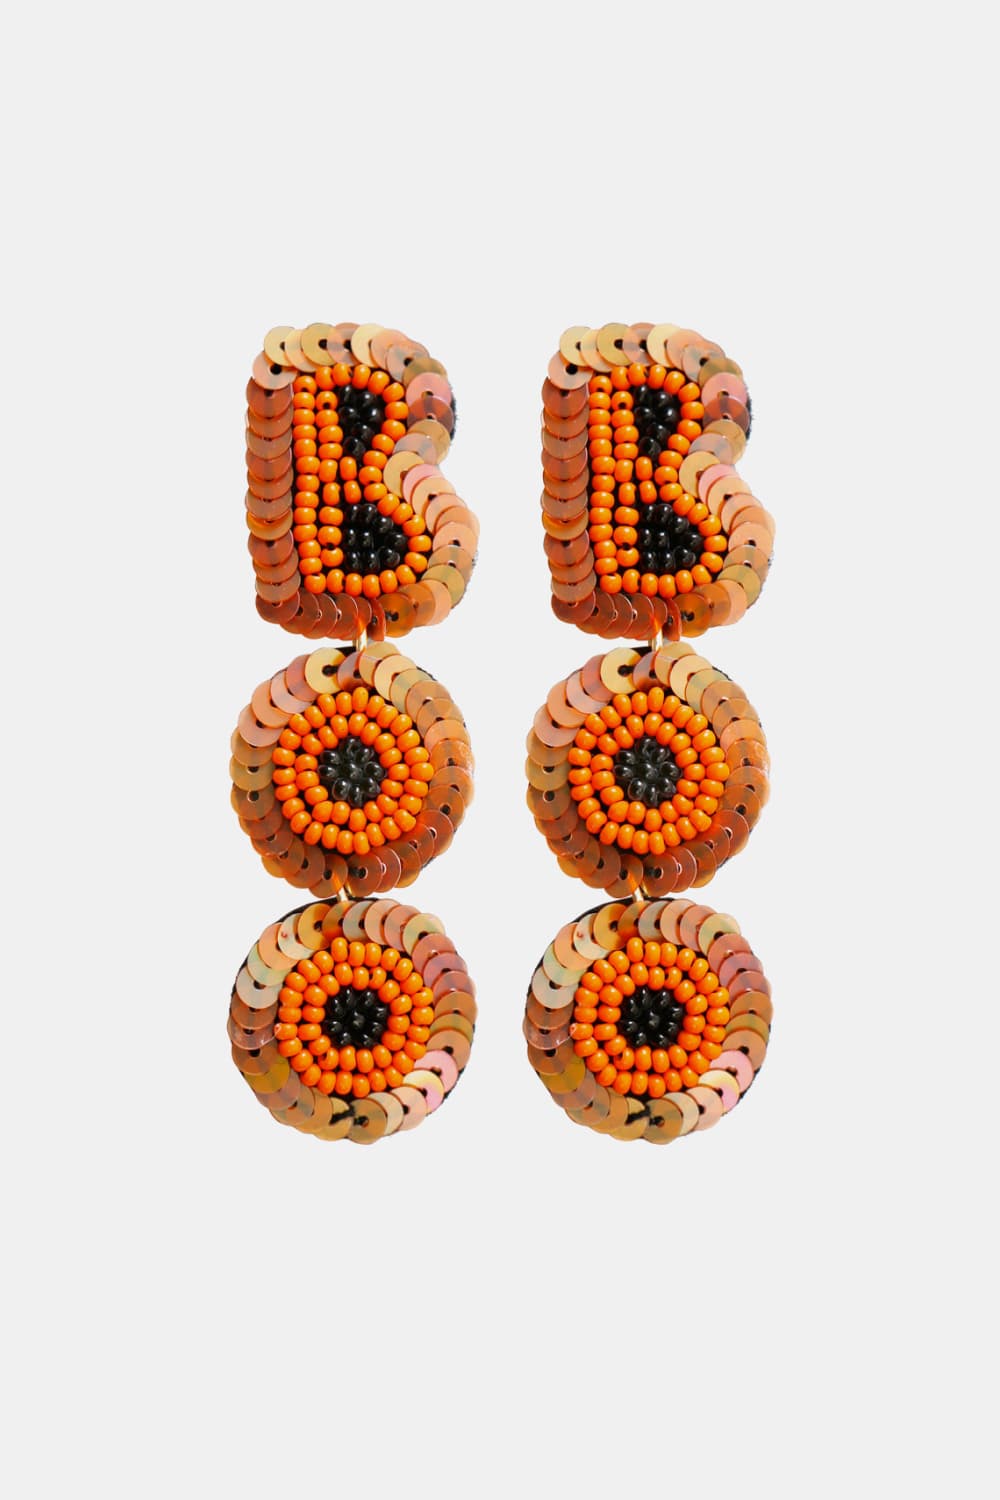 BOO Beaded Dangle Earrings - Orange / One Size - Women’s Jewelry - Earrings - 2 - 2024